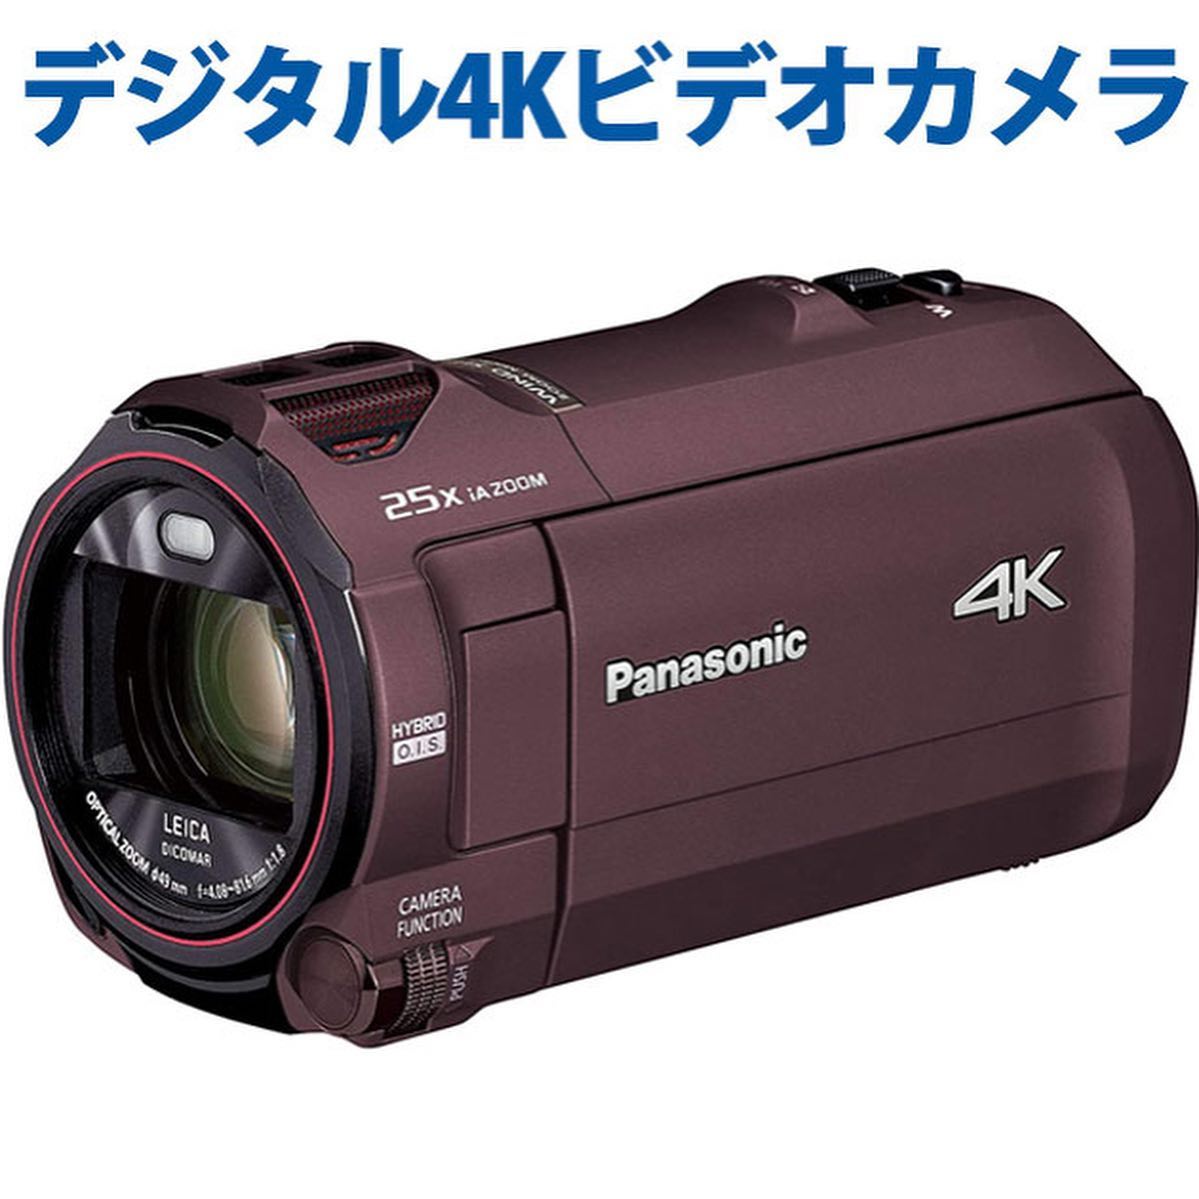 デジタル4Kビデオカメラ をレンタル

4K対応機器を入荷しました。
イベント行事や旅行、学会等の記録や　映像作りにご活用下さい。

家のデジカメが壊れた！
イベントの記録のために、一緒に借りたい！

山形県でデジタル4Kビデオカメラのレンタルは、レントオール山形にお任せください！